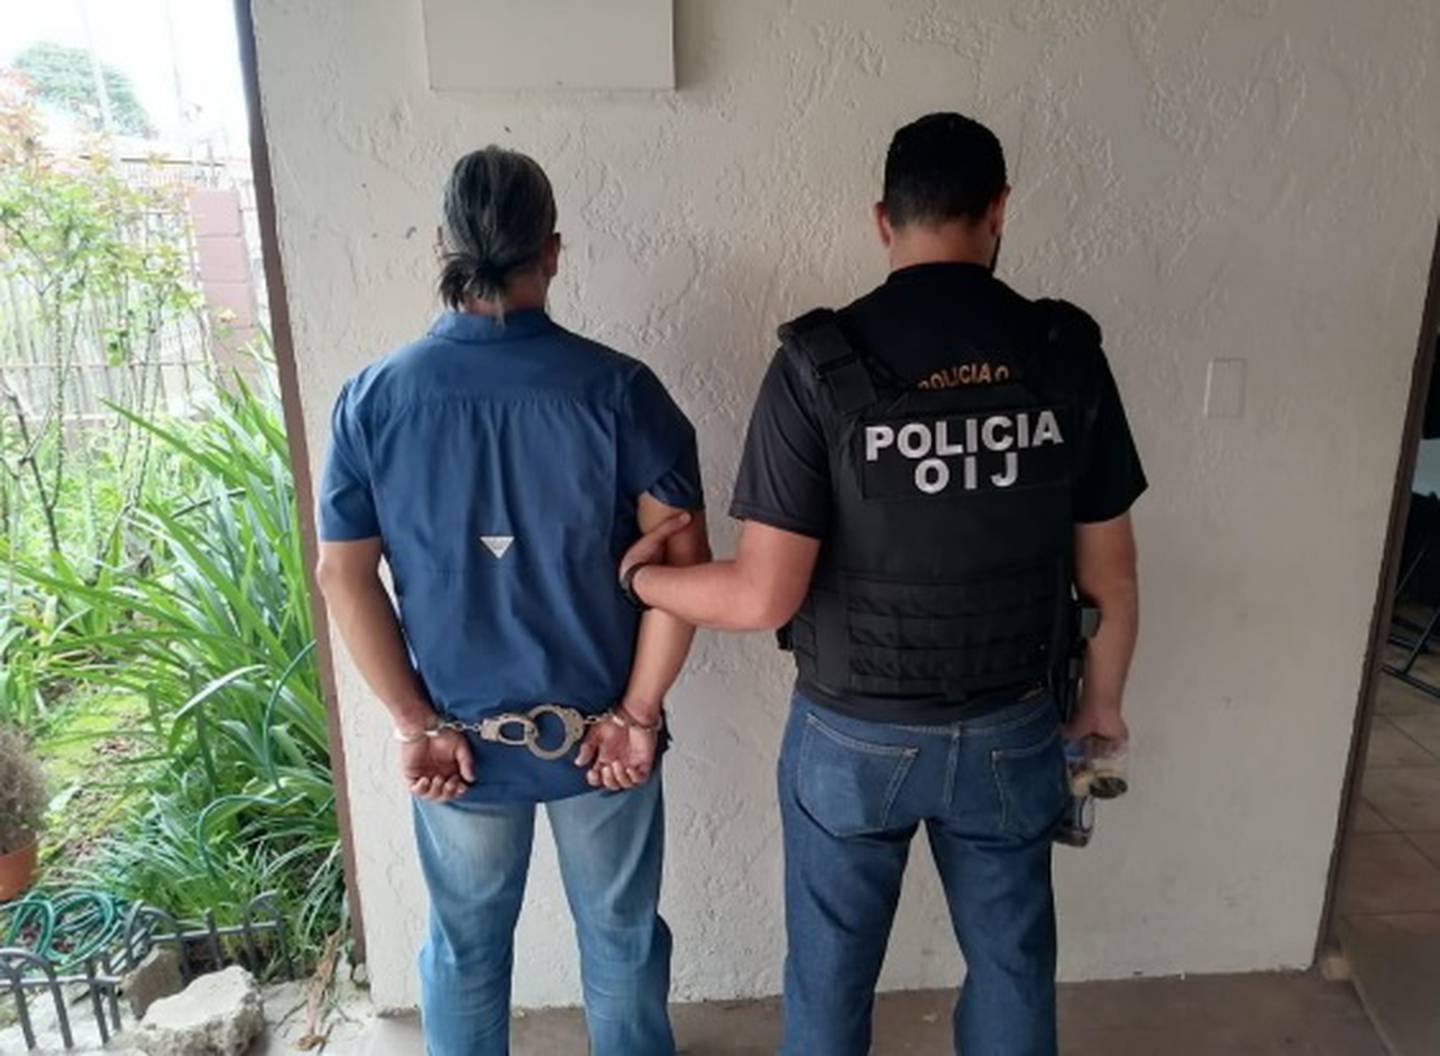 Mesén fue detenido tras un allanamiento a su casa en Desamparados. Foto OIJ.